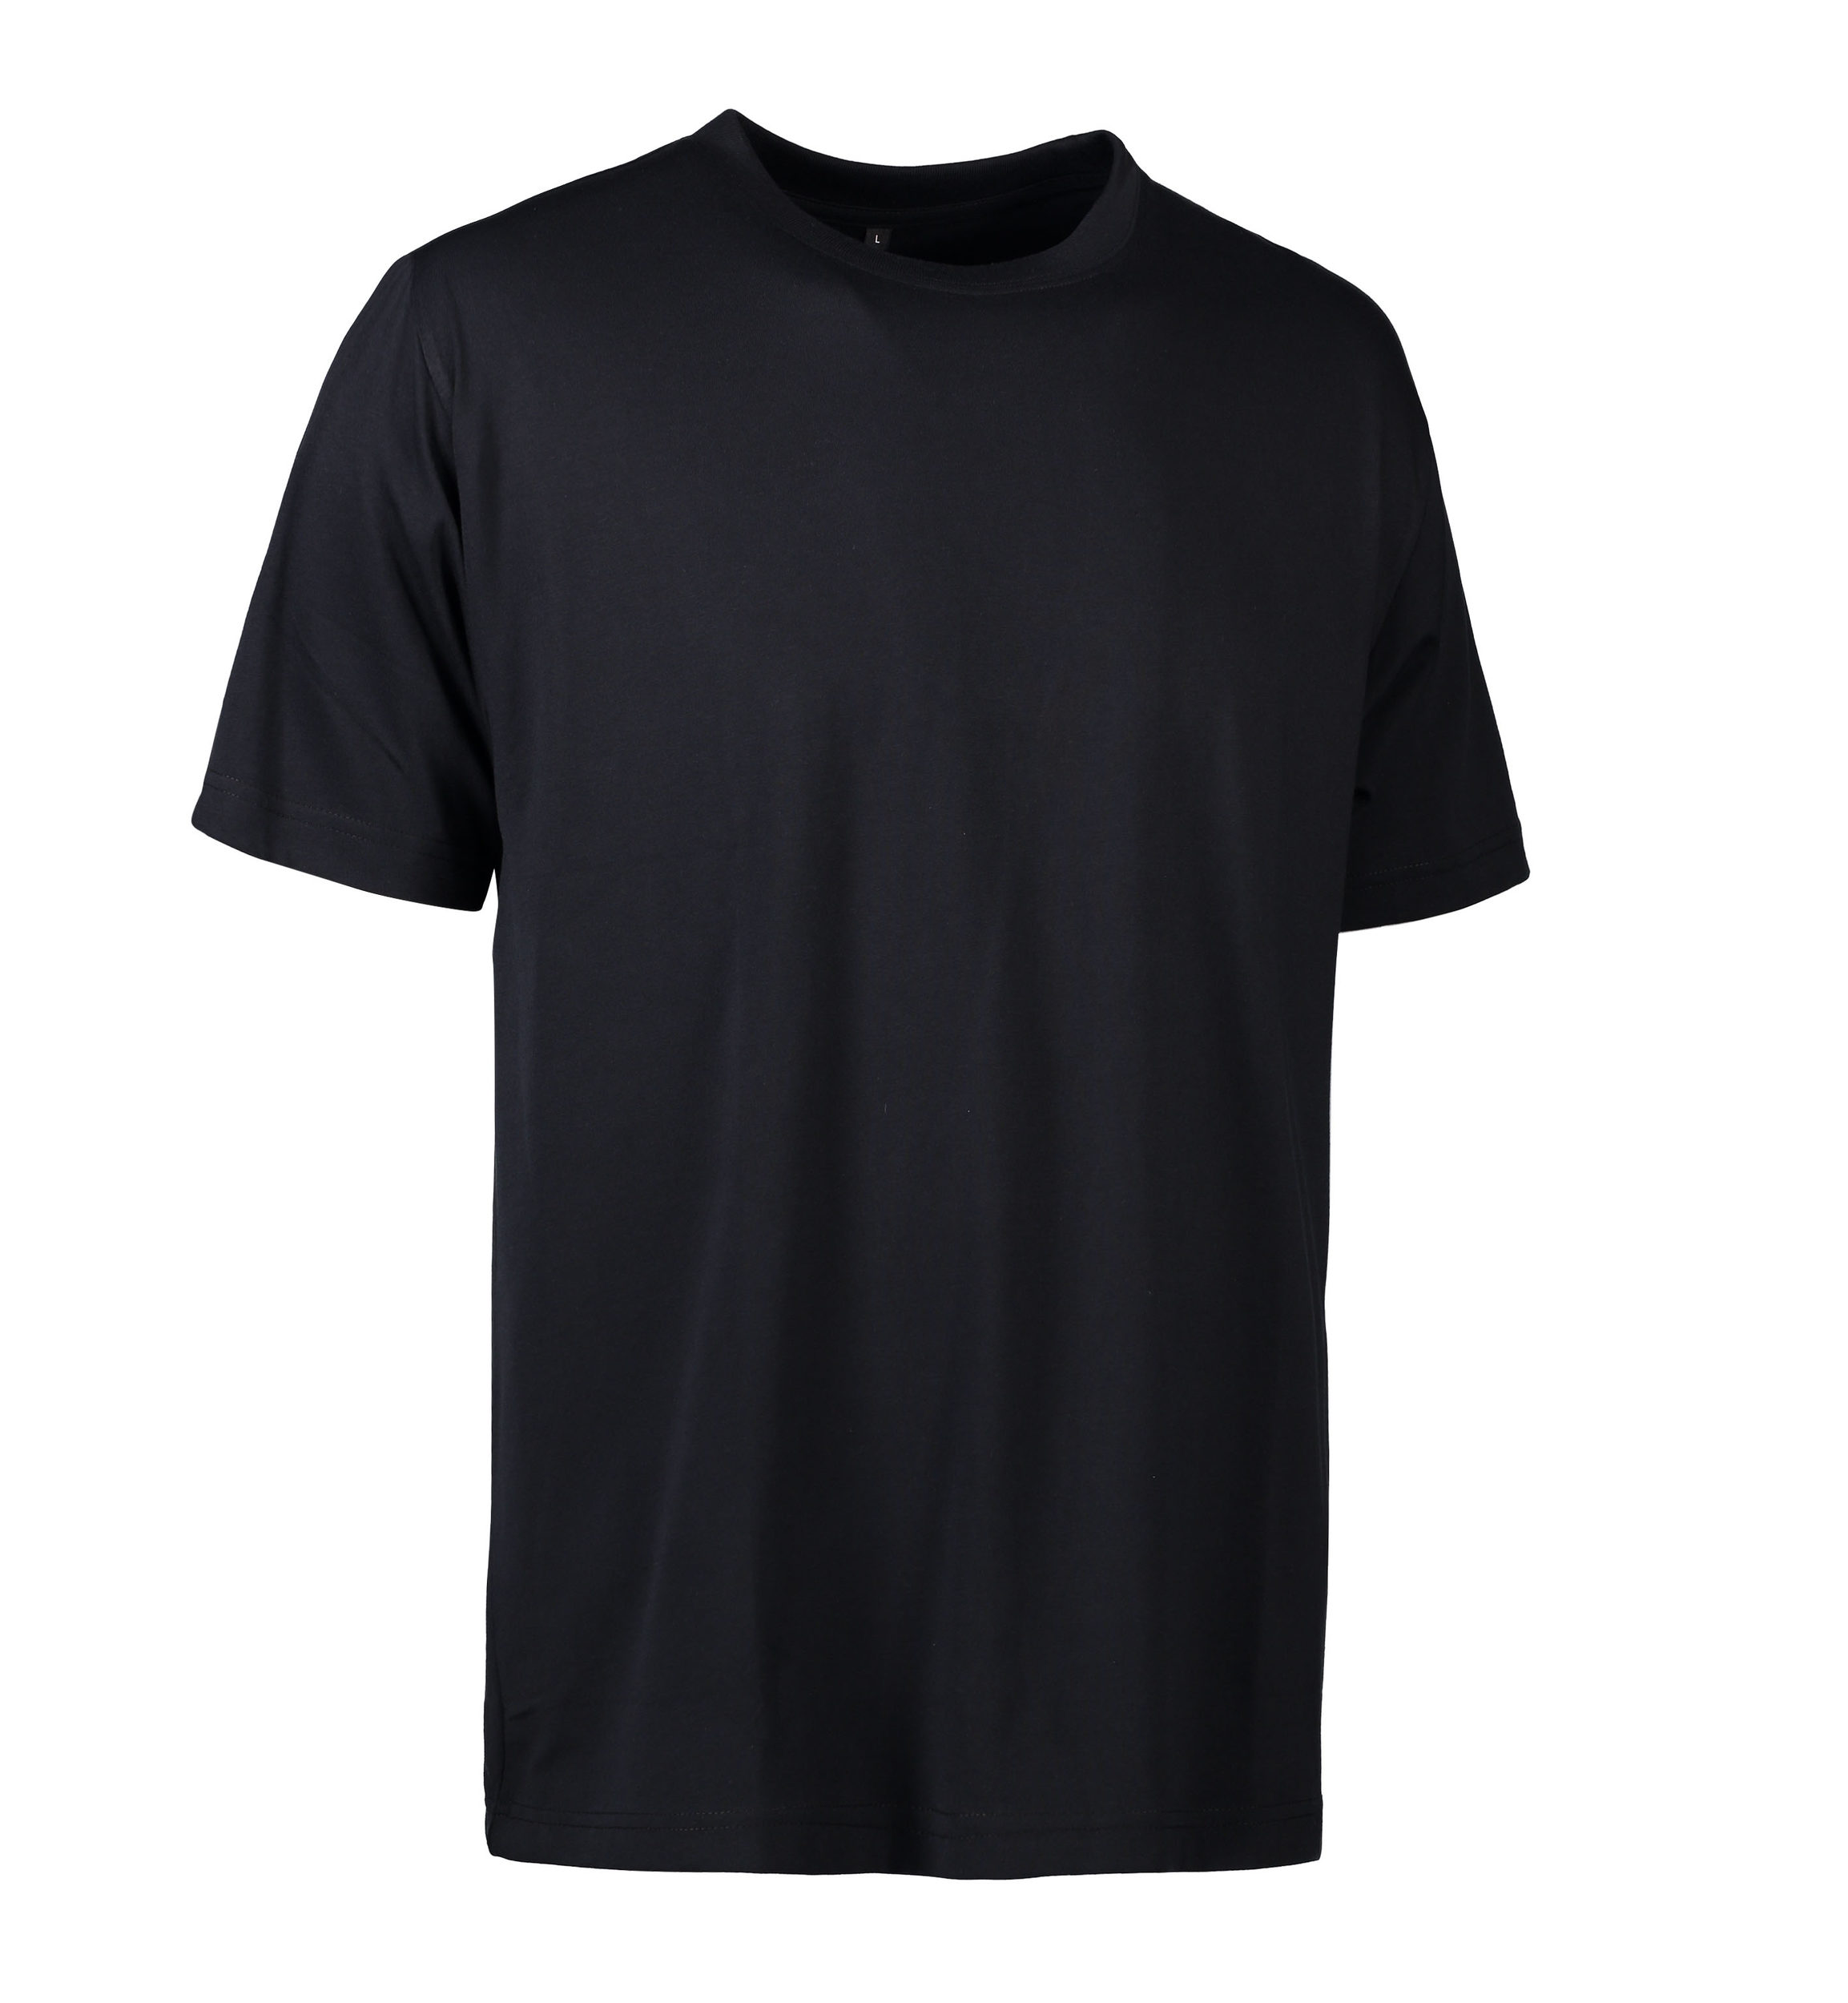 Se Slidstærk t-shirt i sort til mænd - XL hos Sygeplejebutikken.dk